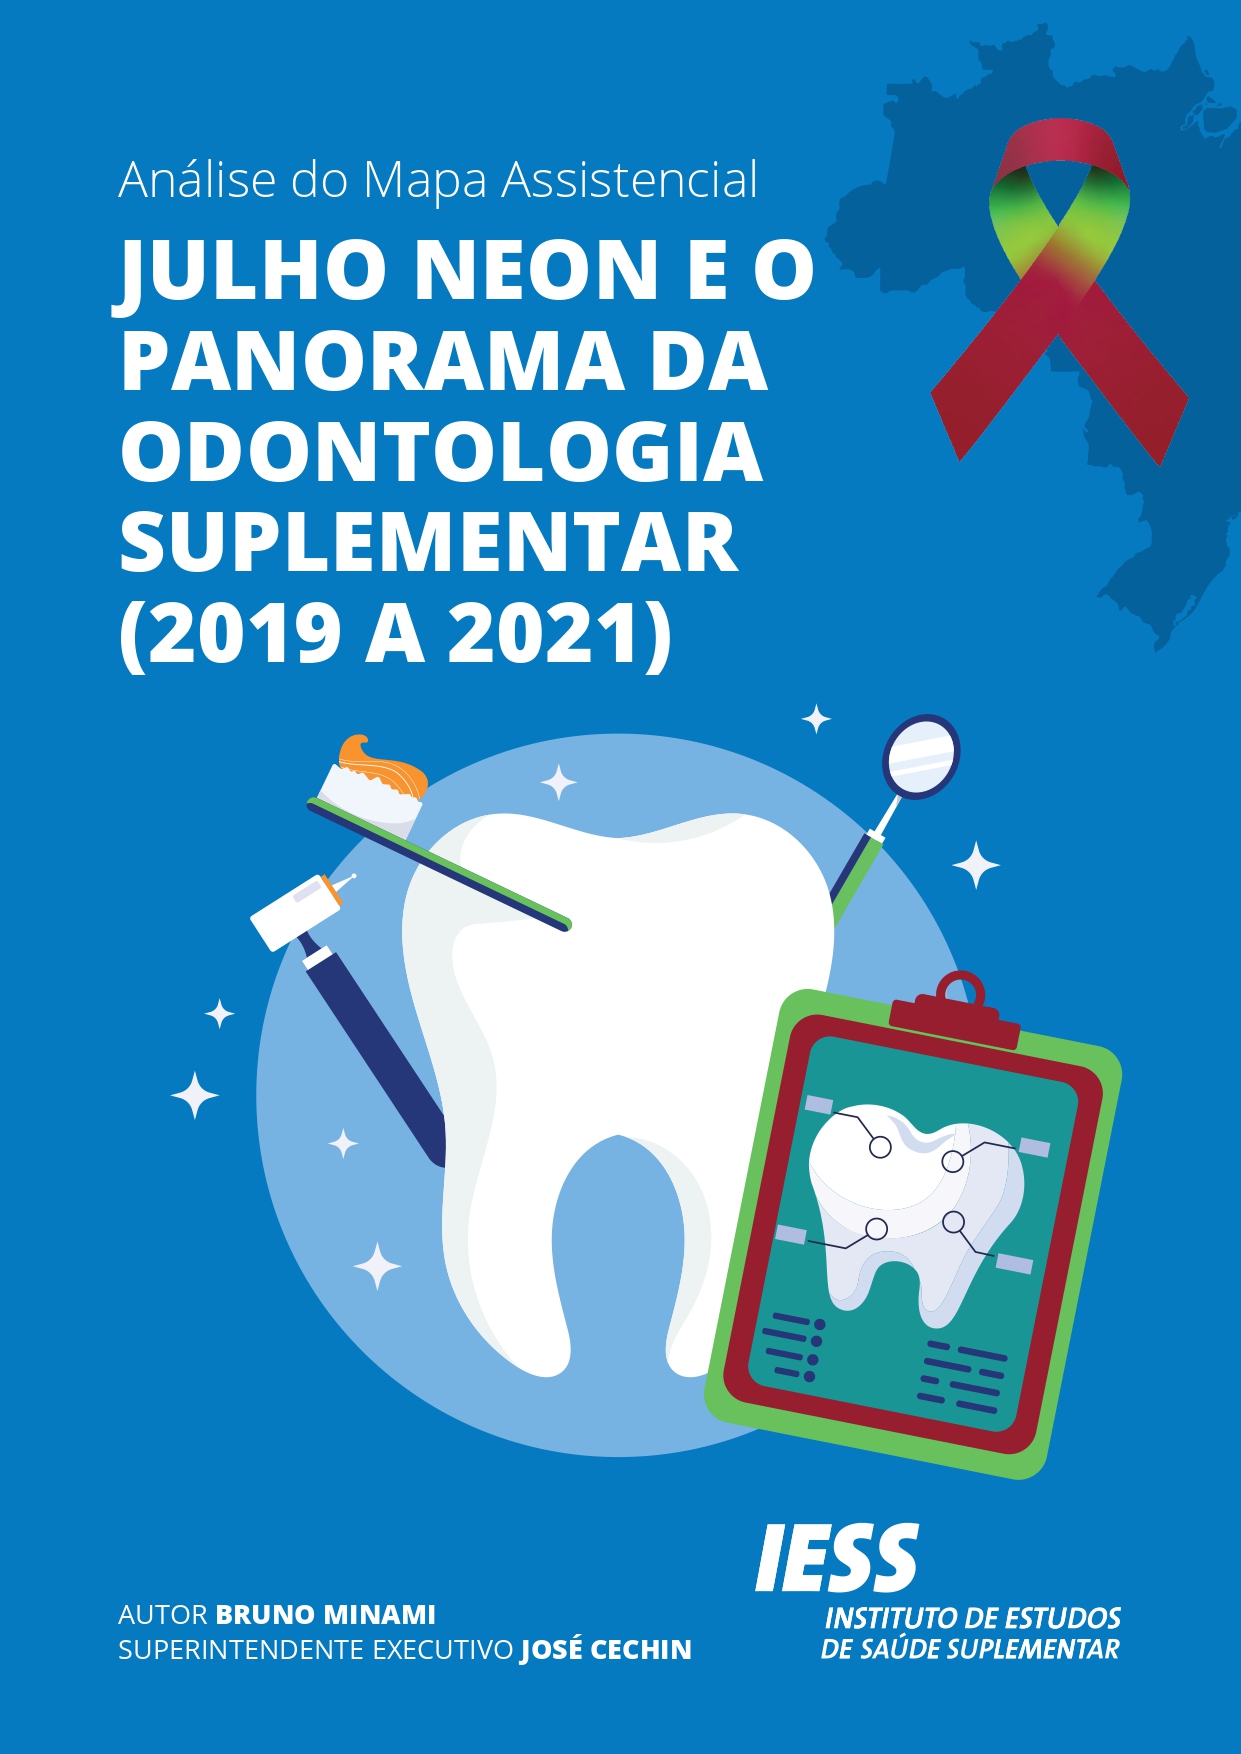 Análise do Mapa Assistencial | Julho Neon e o Panorama da Odontologia Suplementar (2019 a 2021)